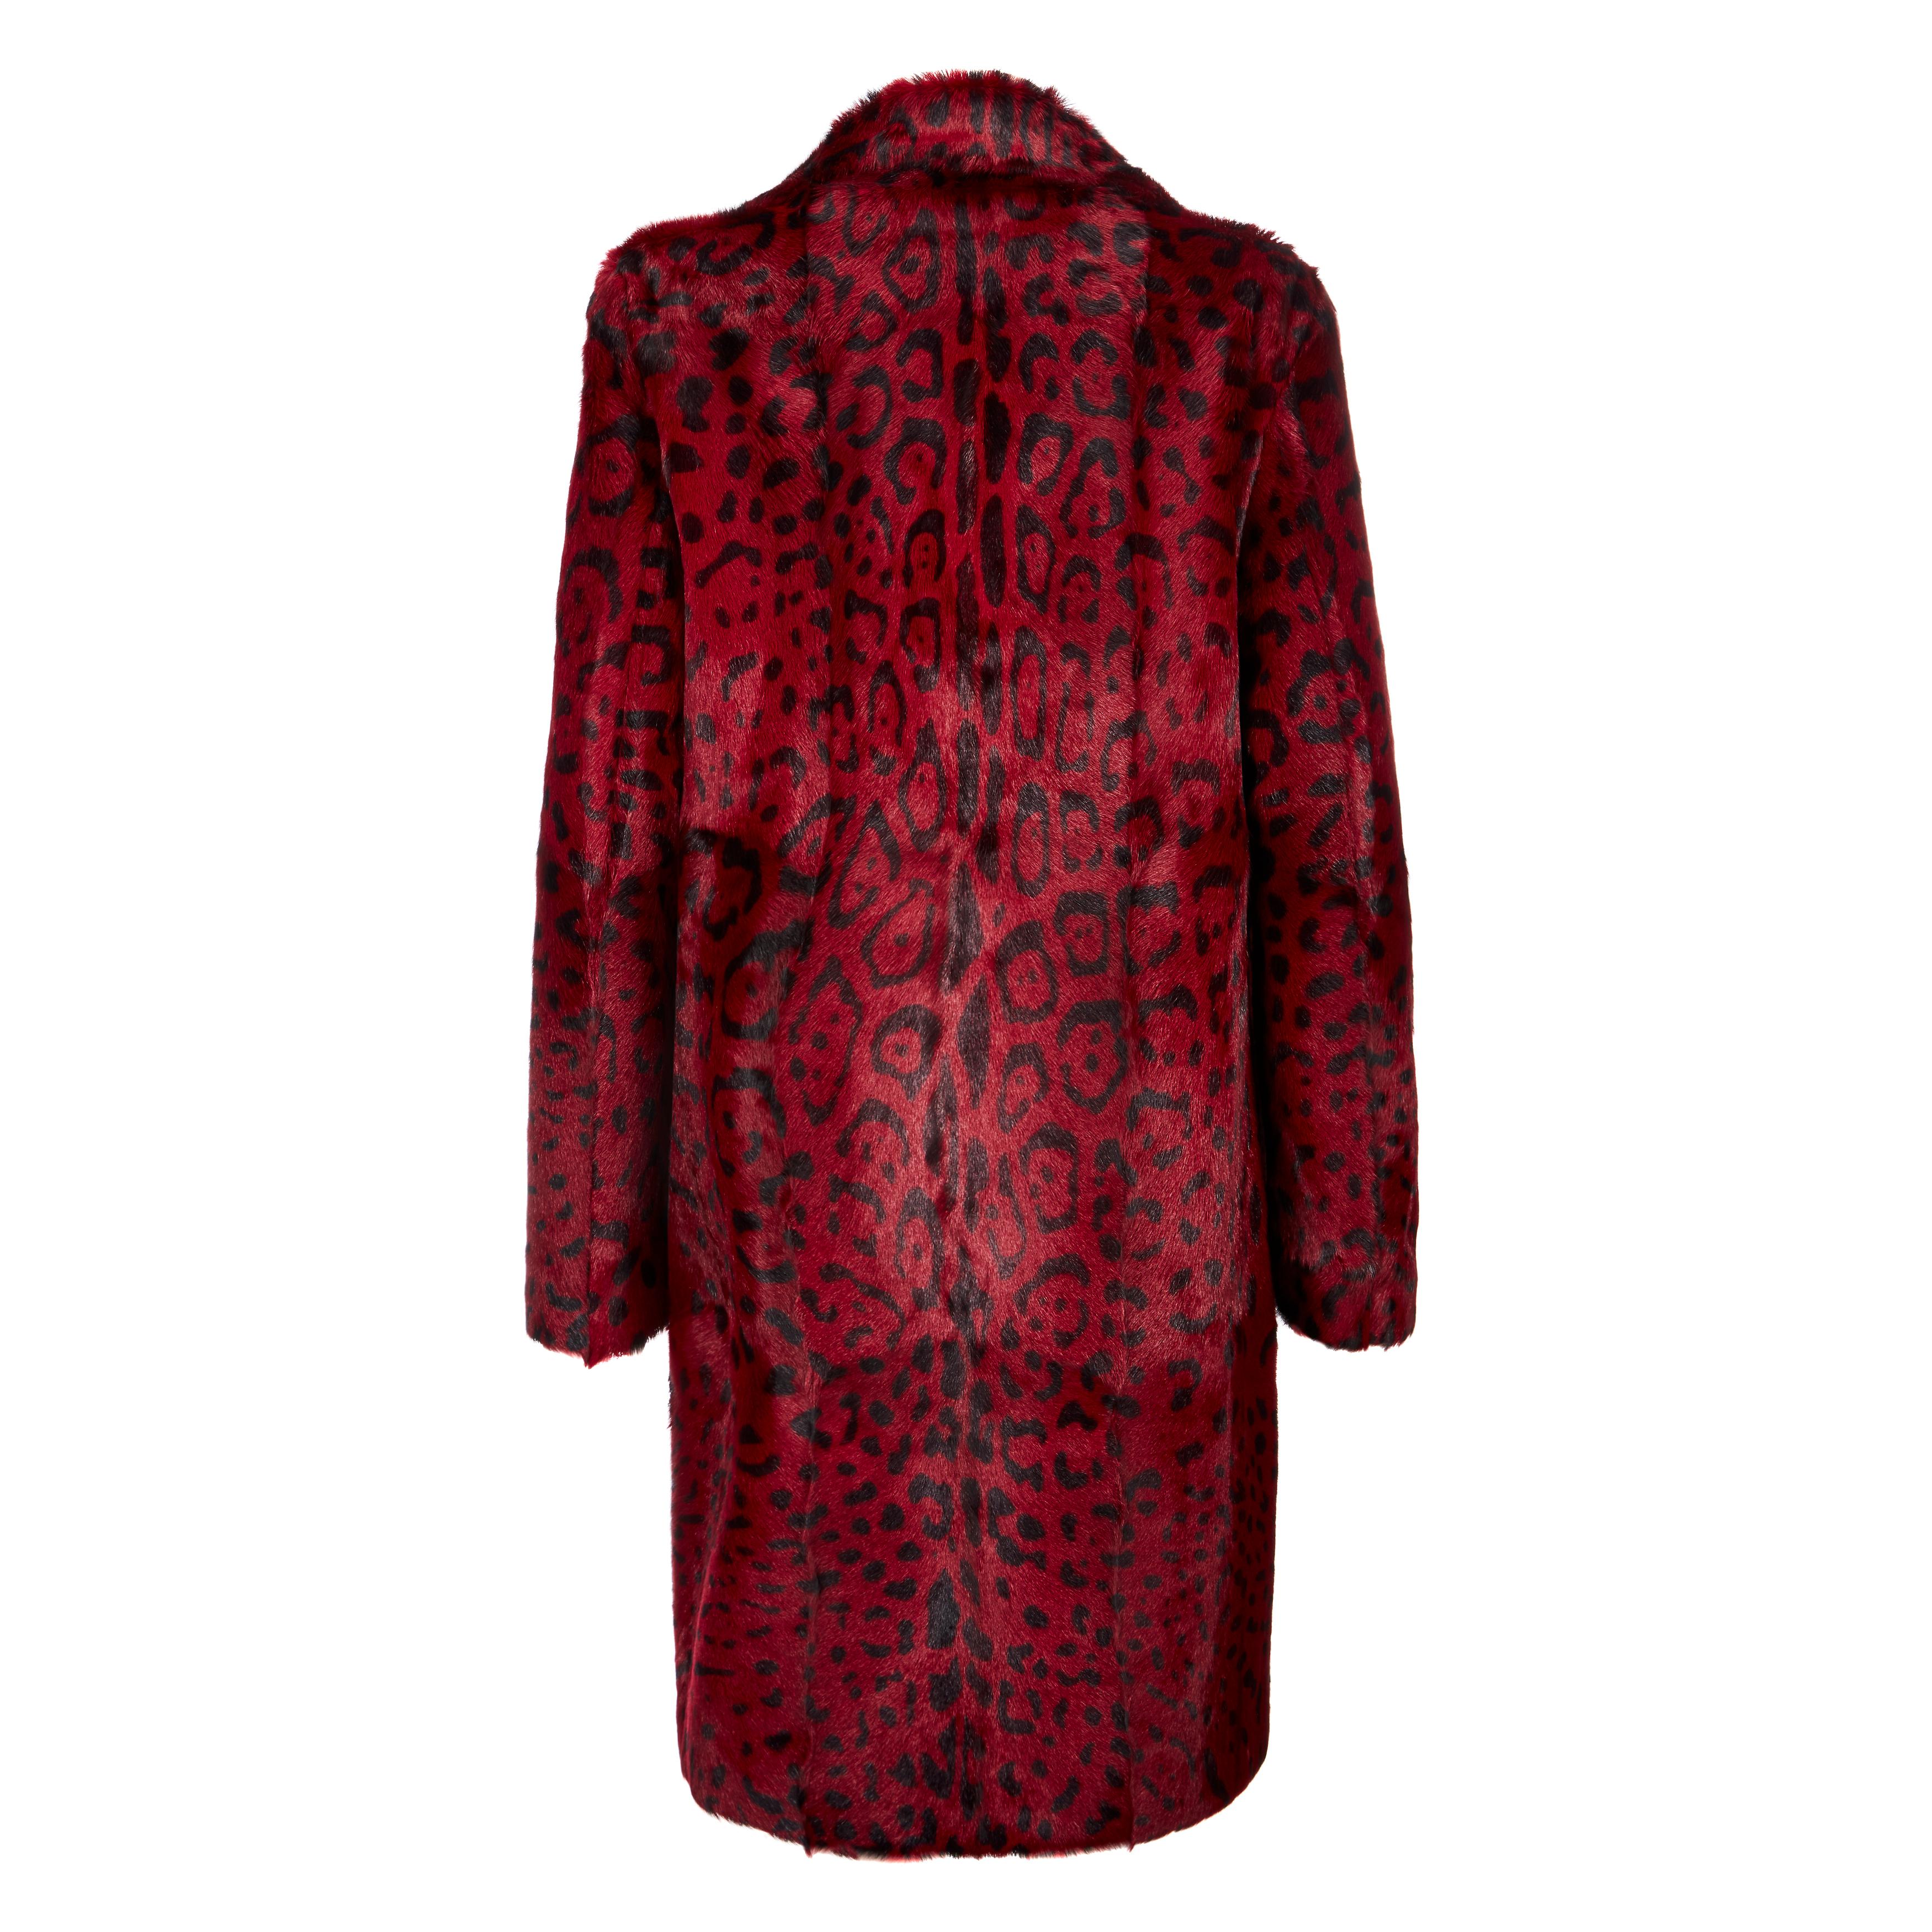 red leopard print coat